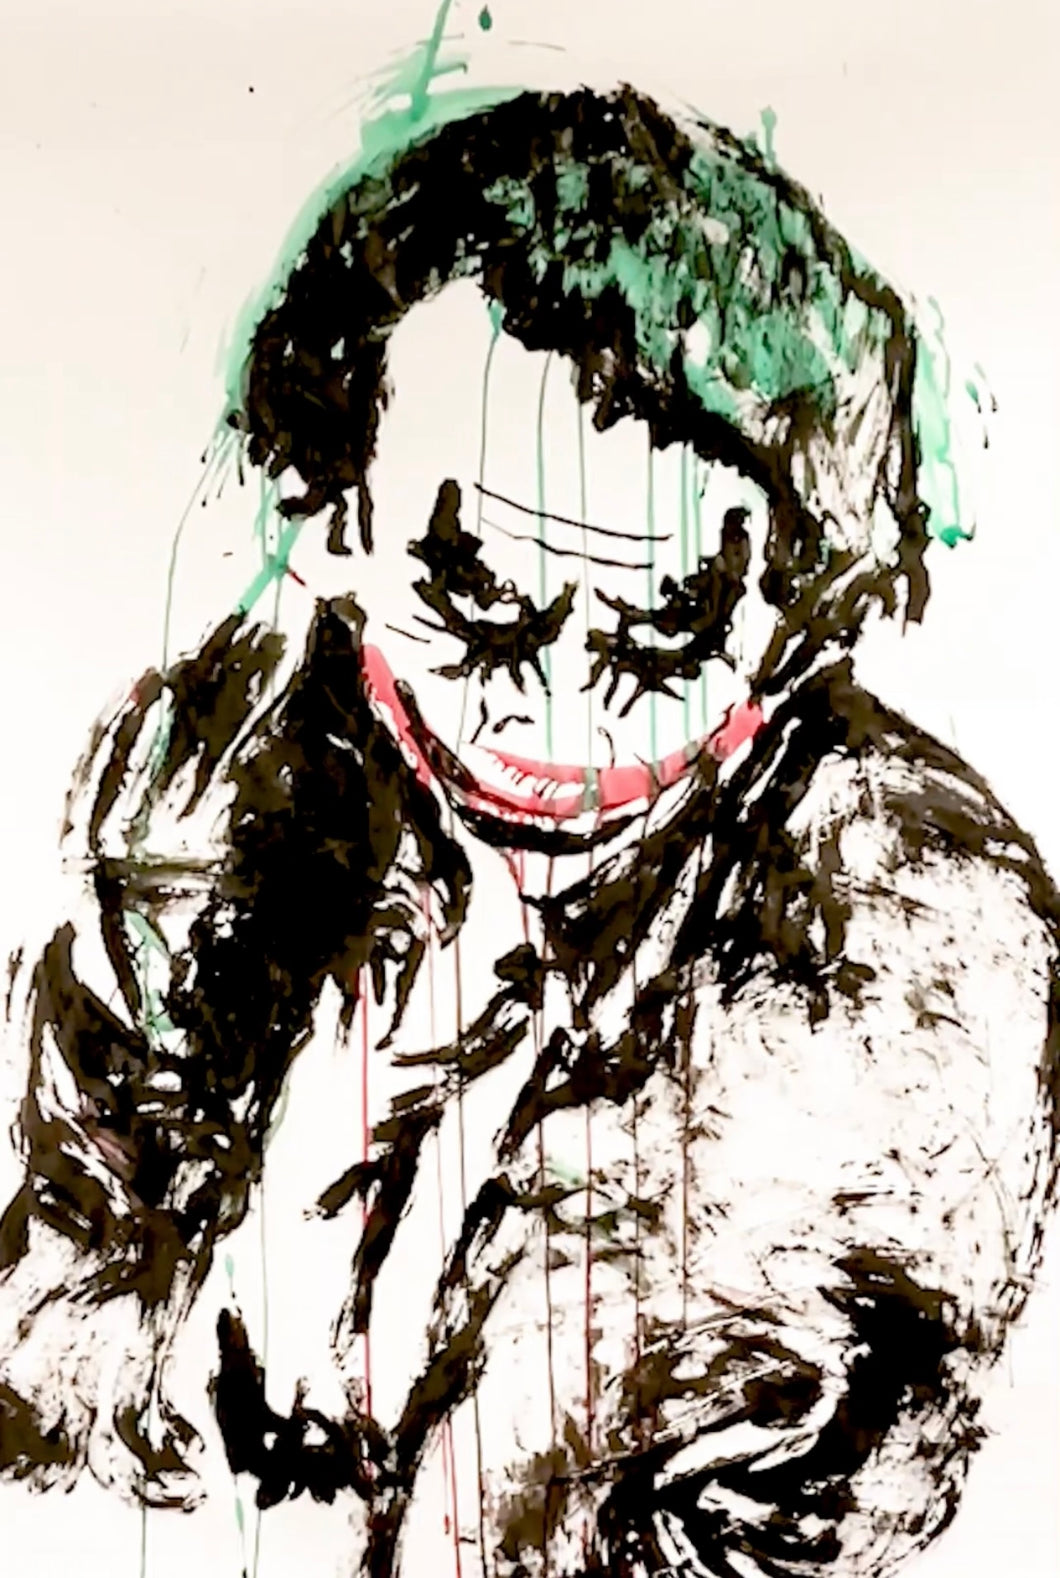 Heath as the Joker finger painting 4ft x 5ft